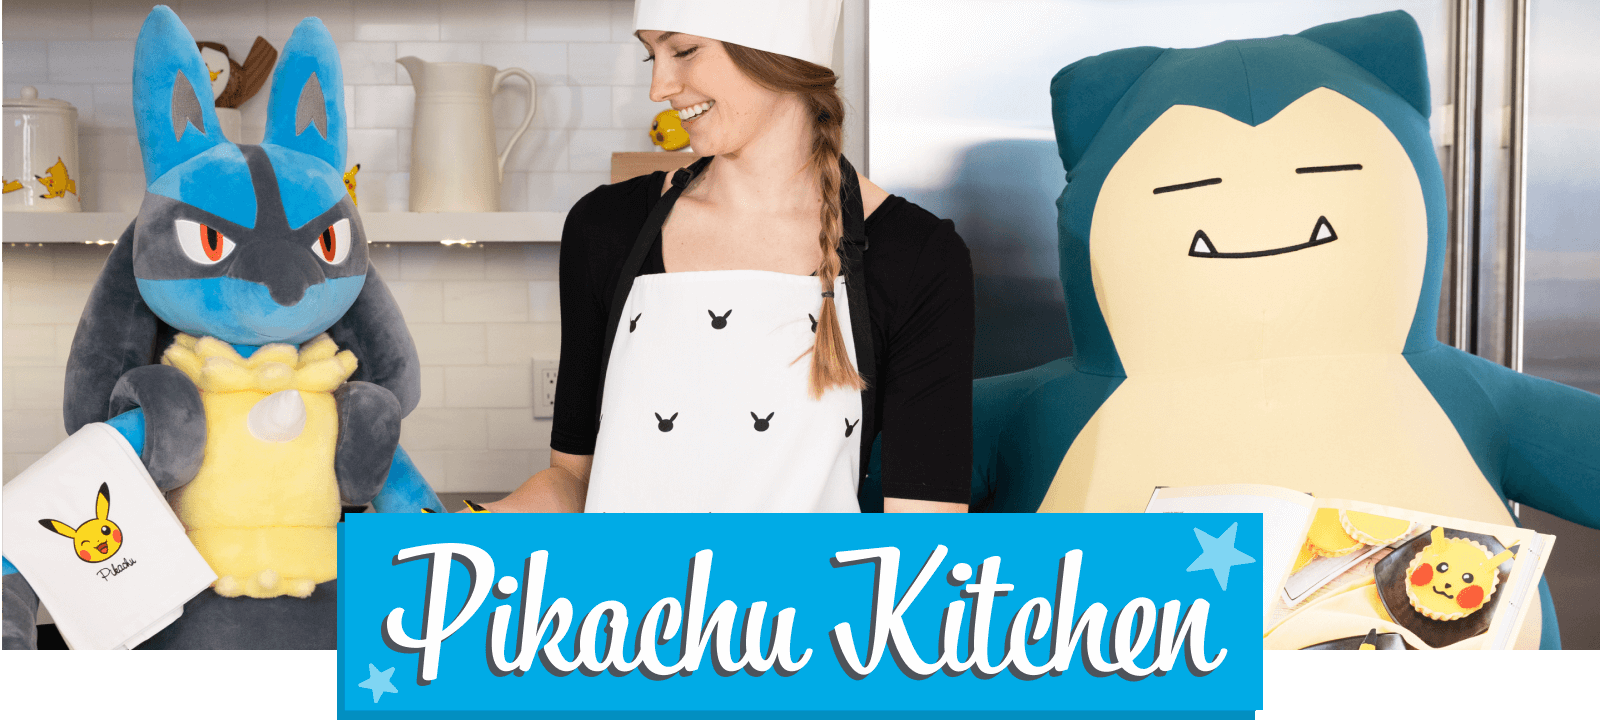 Pokémon Center Singapore - Pikachu Kitchen series 